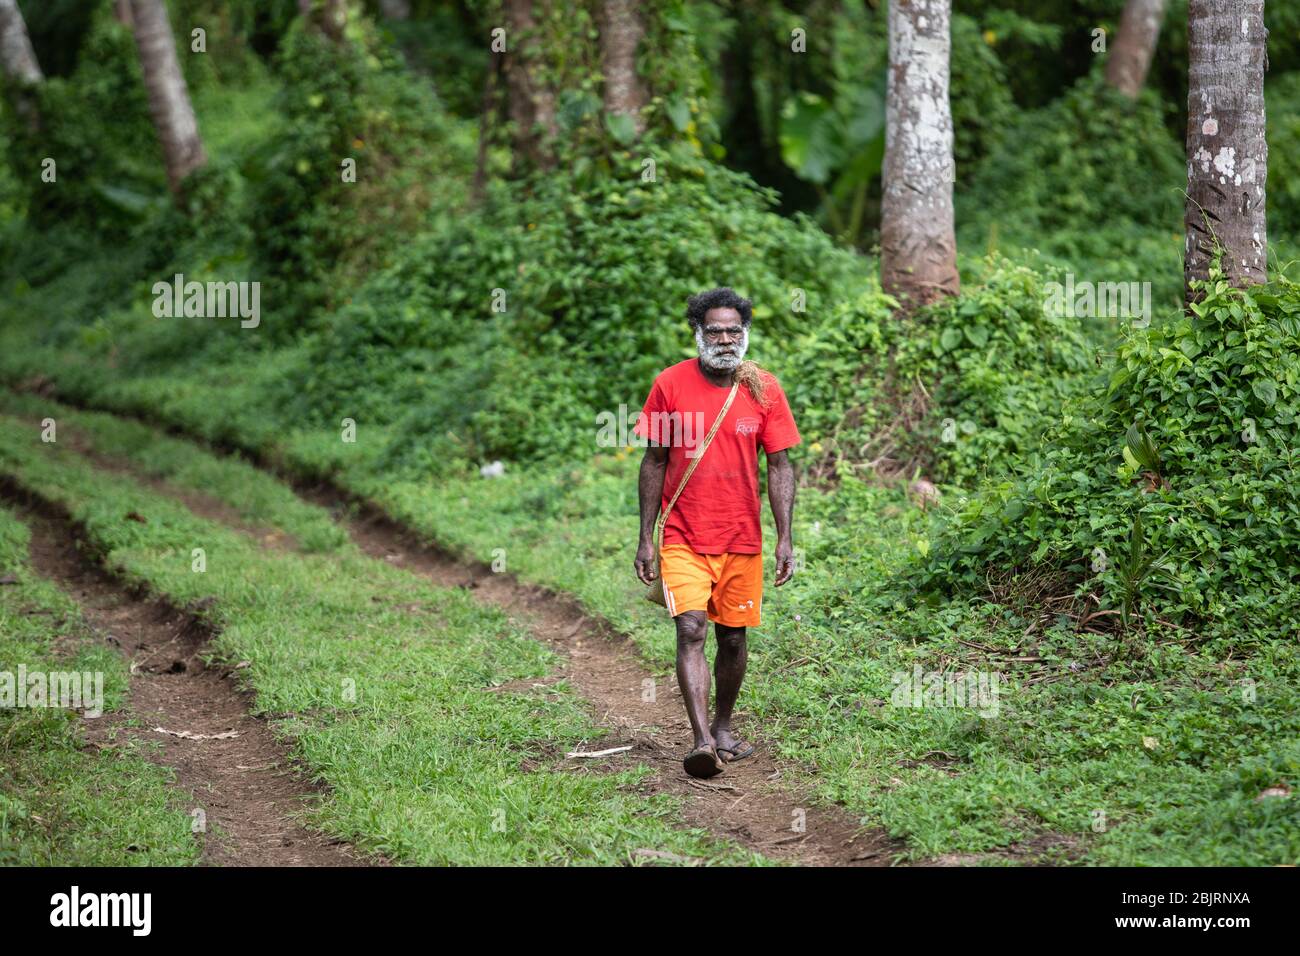 Pentercost, Vanuatu : Verde exuberante selva tropical, Melanesia hombre en la carretera Foto de stock